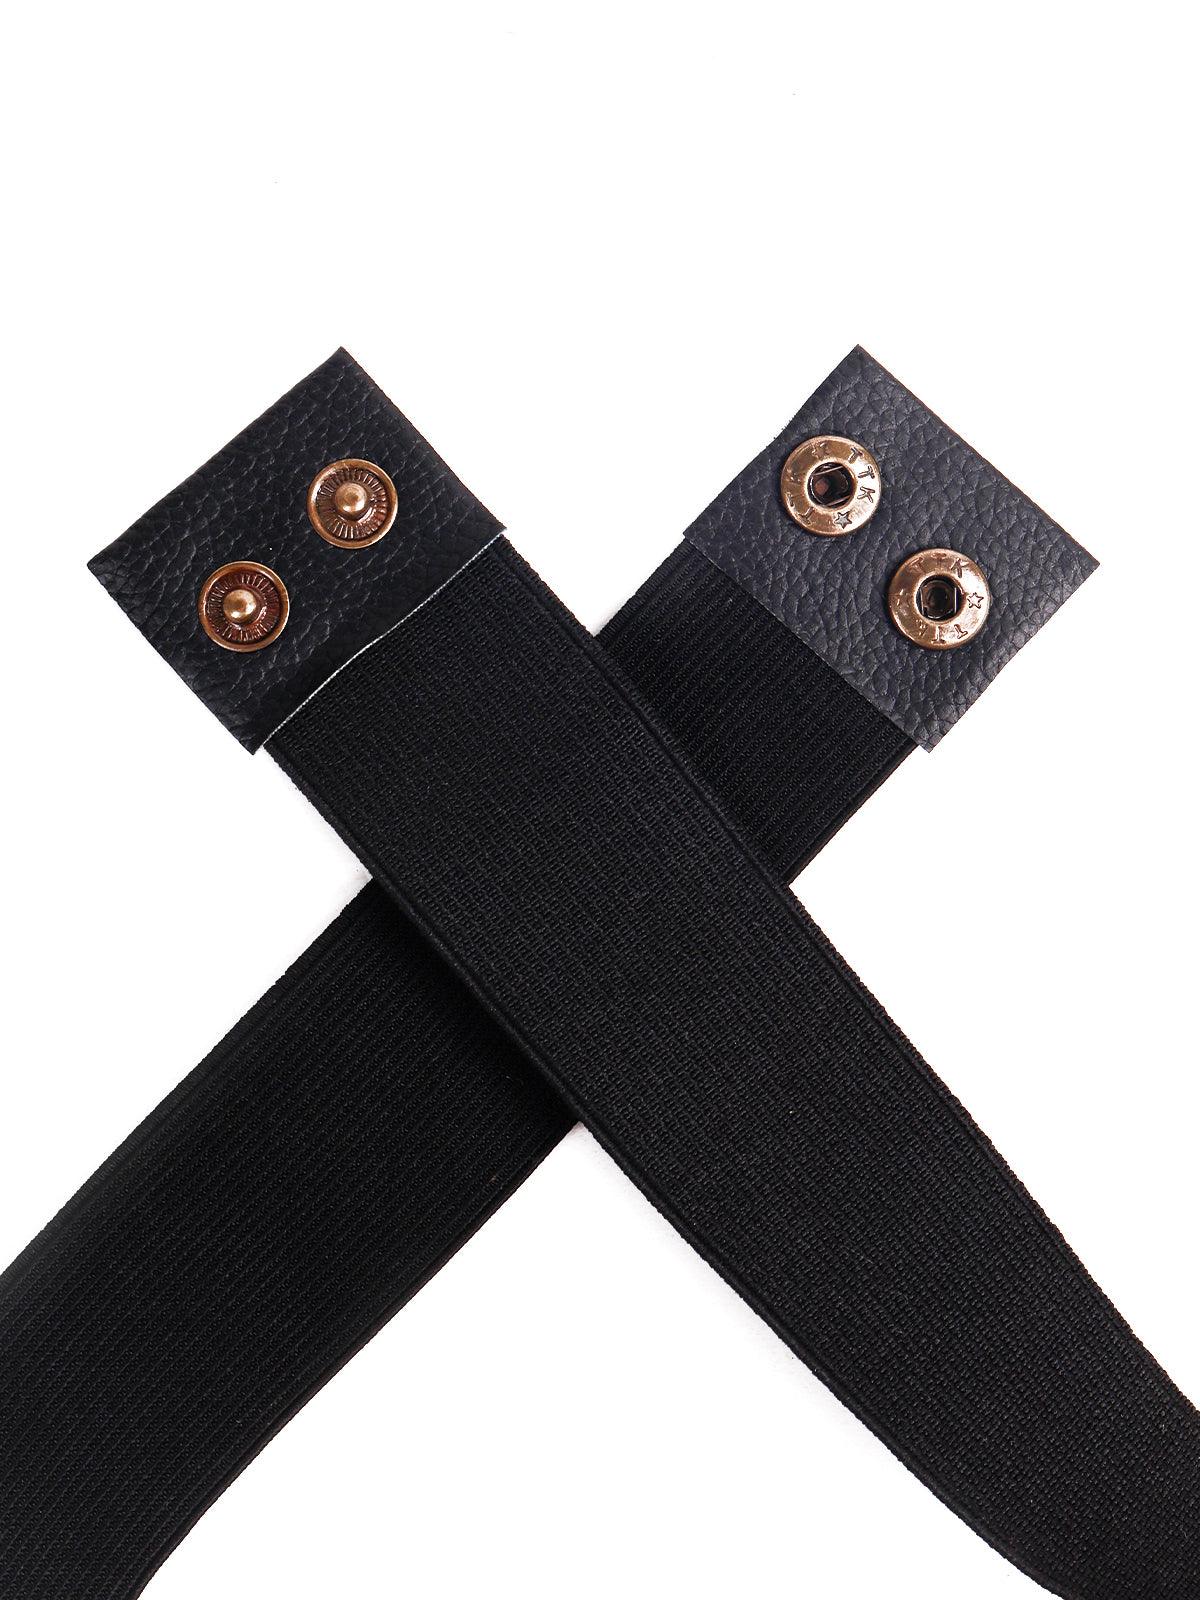 Gorgeous Black Embellished Elastic Belt - Odette